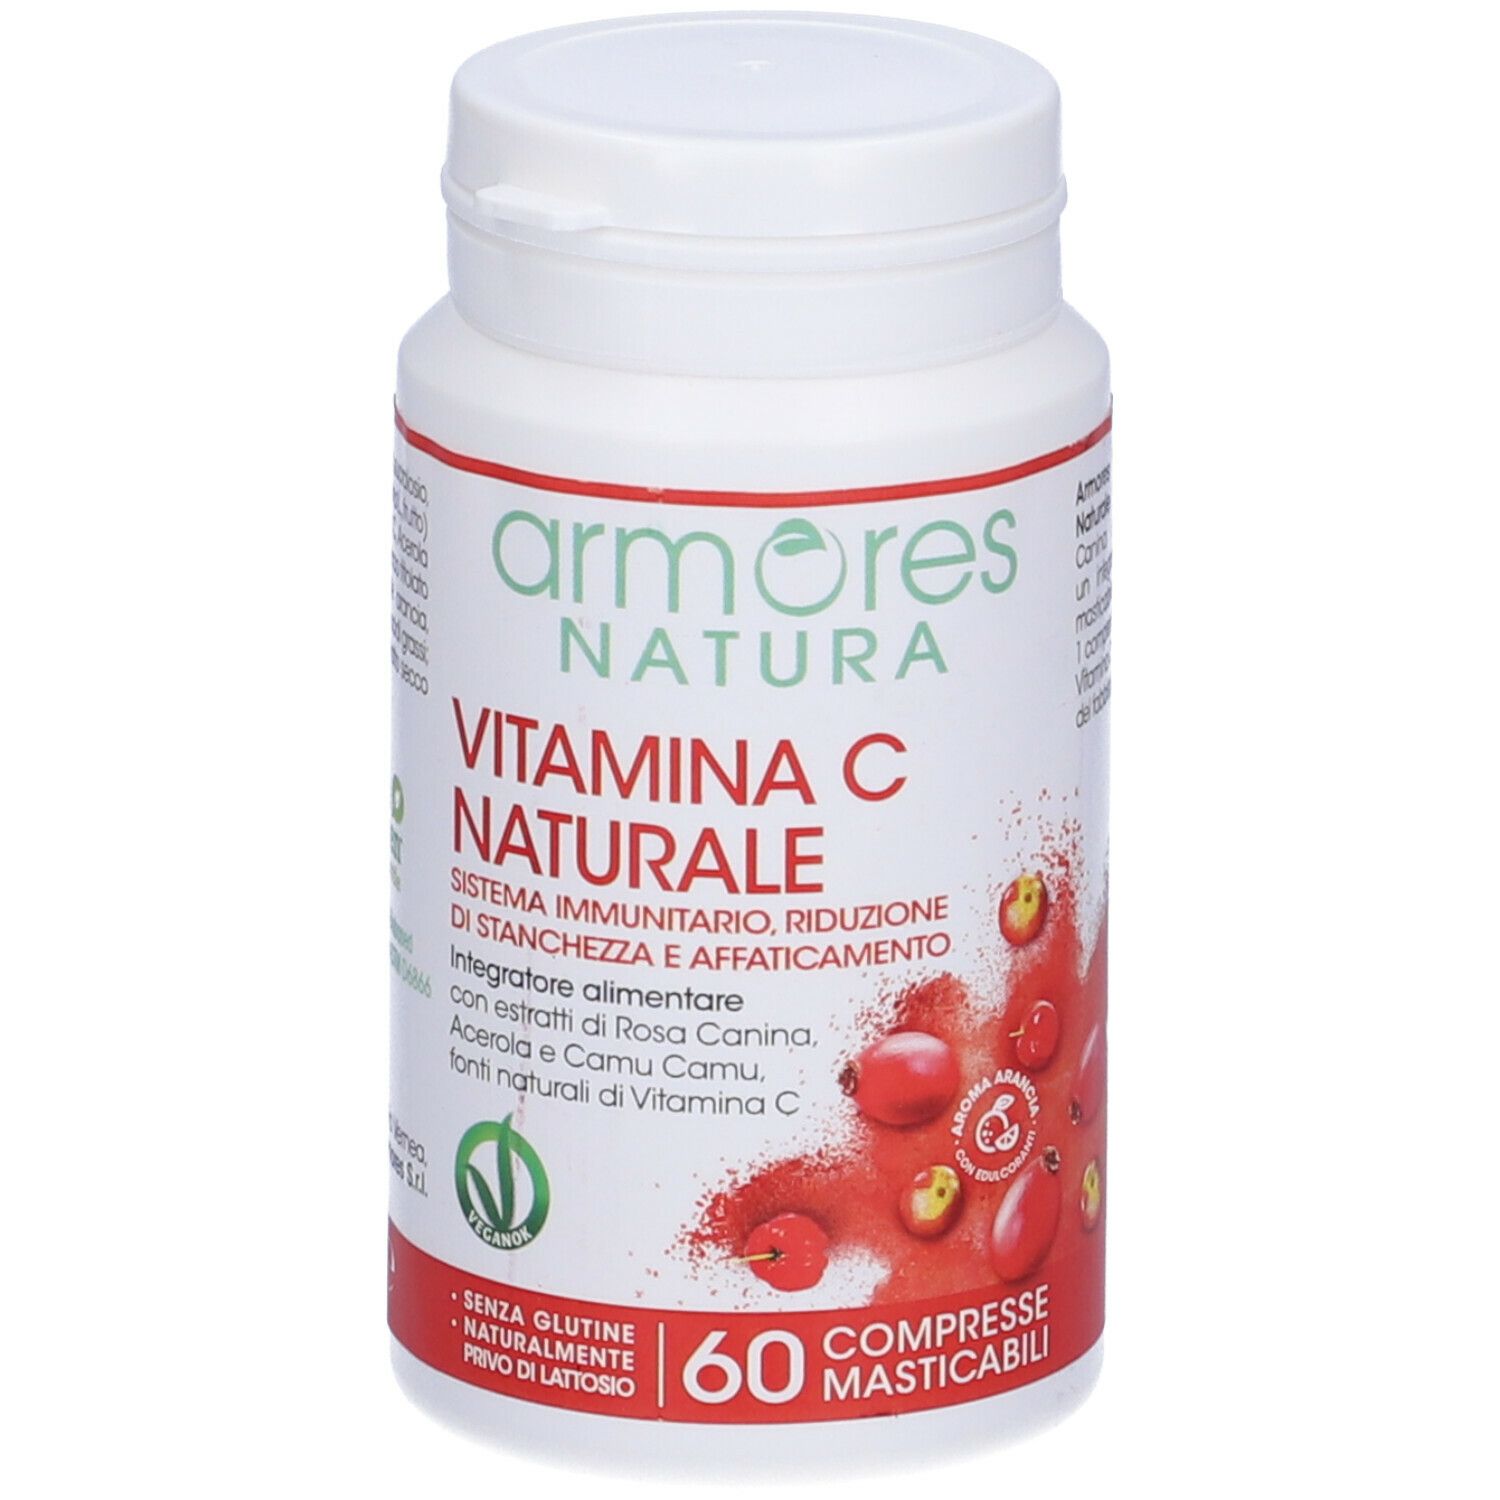 Armores Natura Vitamina C Naturale 84 g